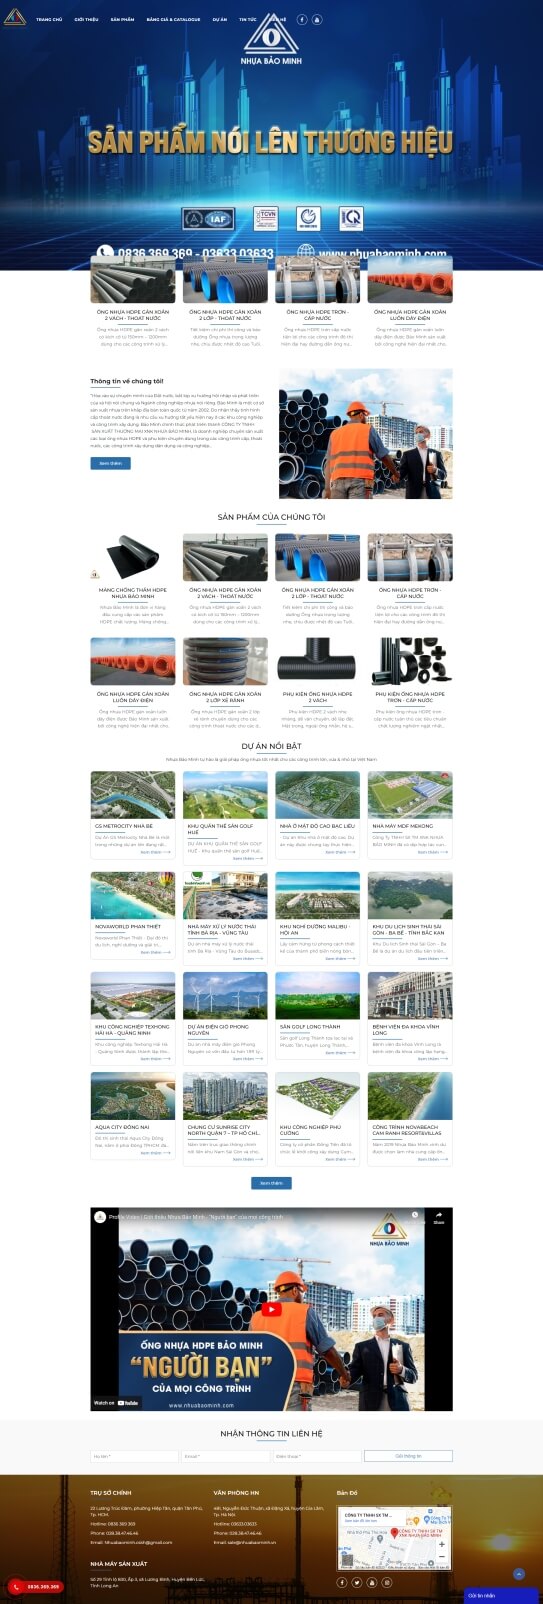 Website 1 trong các công ty đại gia Minh nhựa nổi tiếng